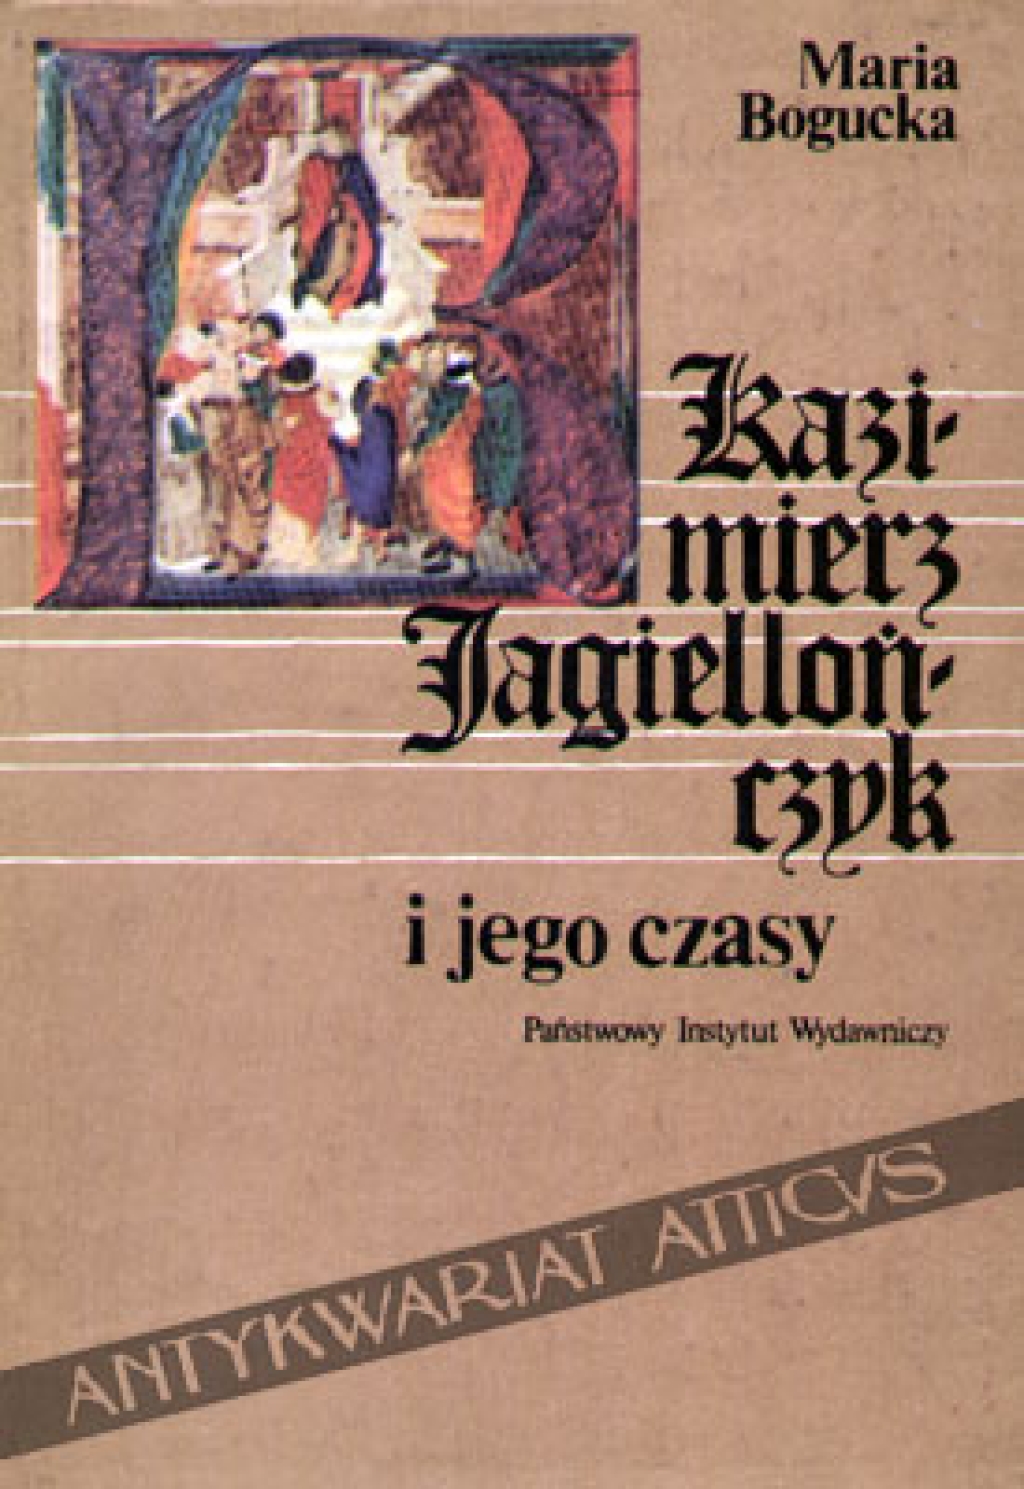 Kazimierz Jagiellończyk i jego czasy